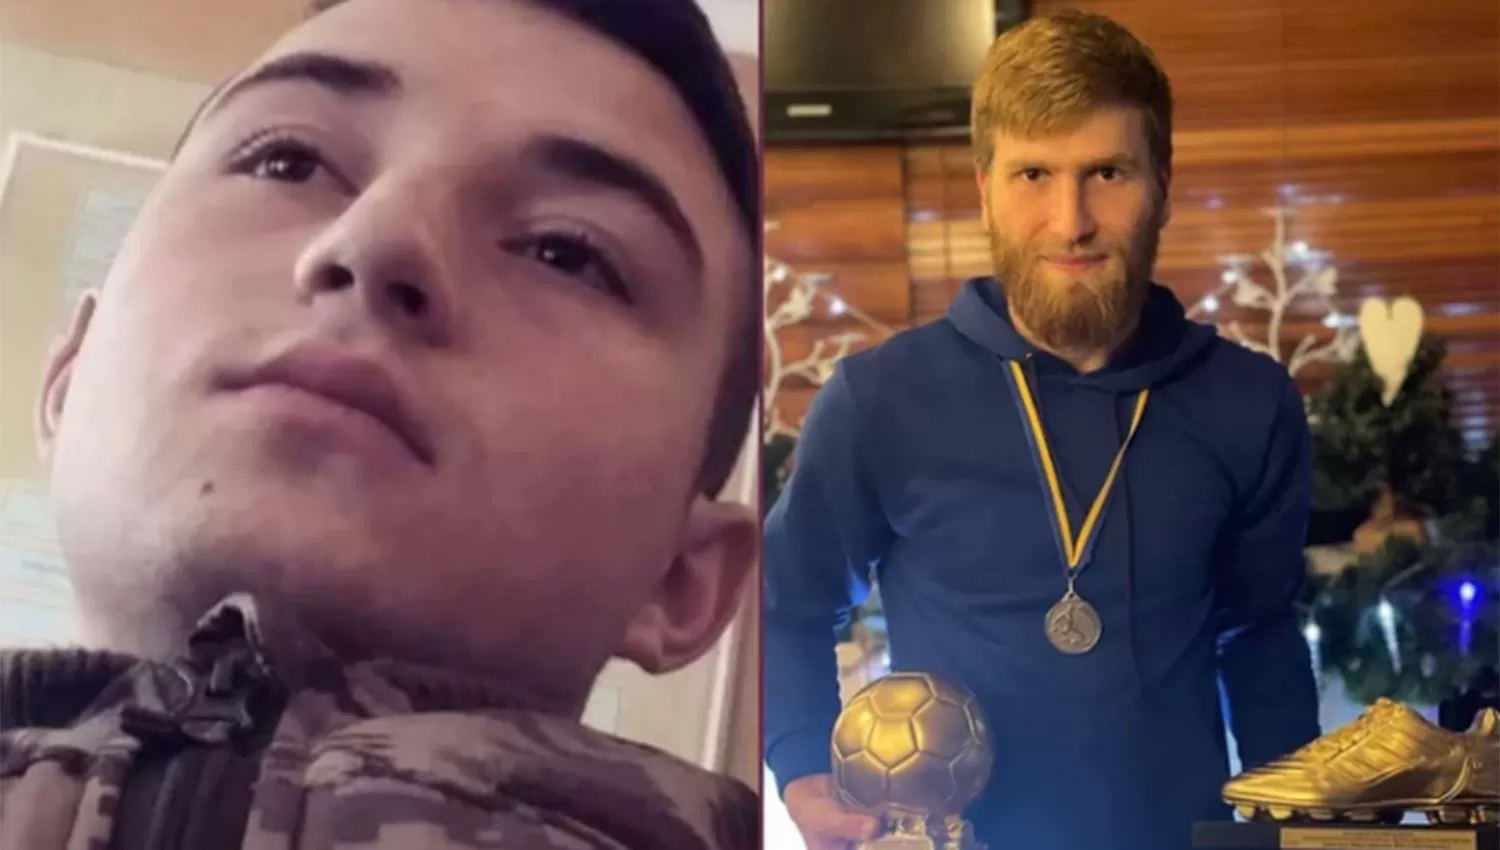 LOS PRIMEROS. Las víctimas fueron identificadas como Vitalii Sapylo, de 21 años, y Dmytro Martynenko, de 25.